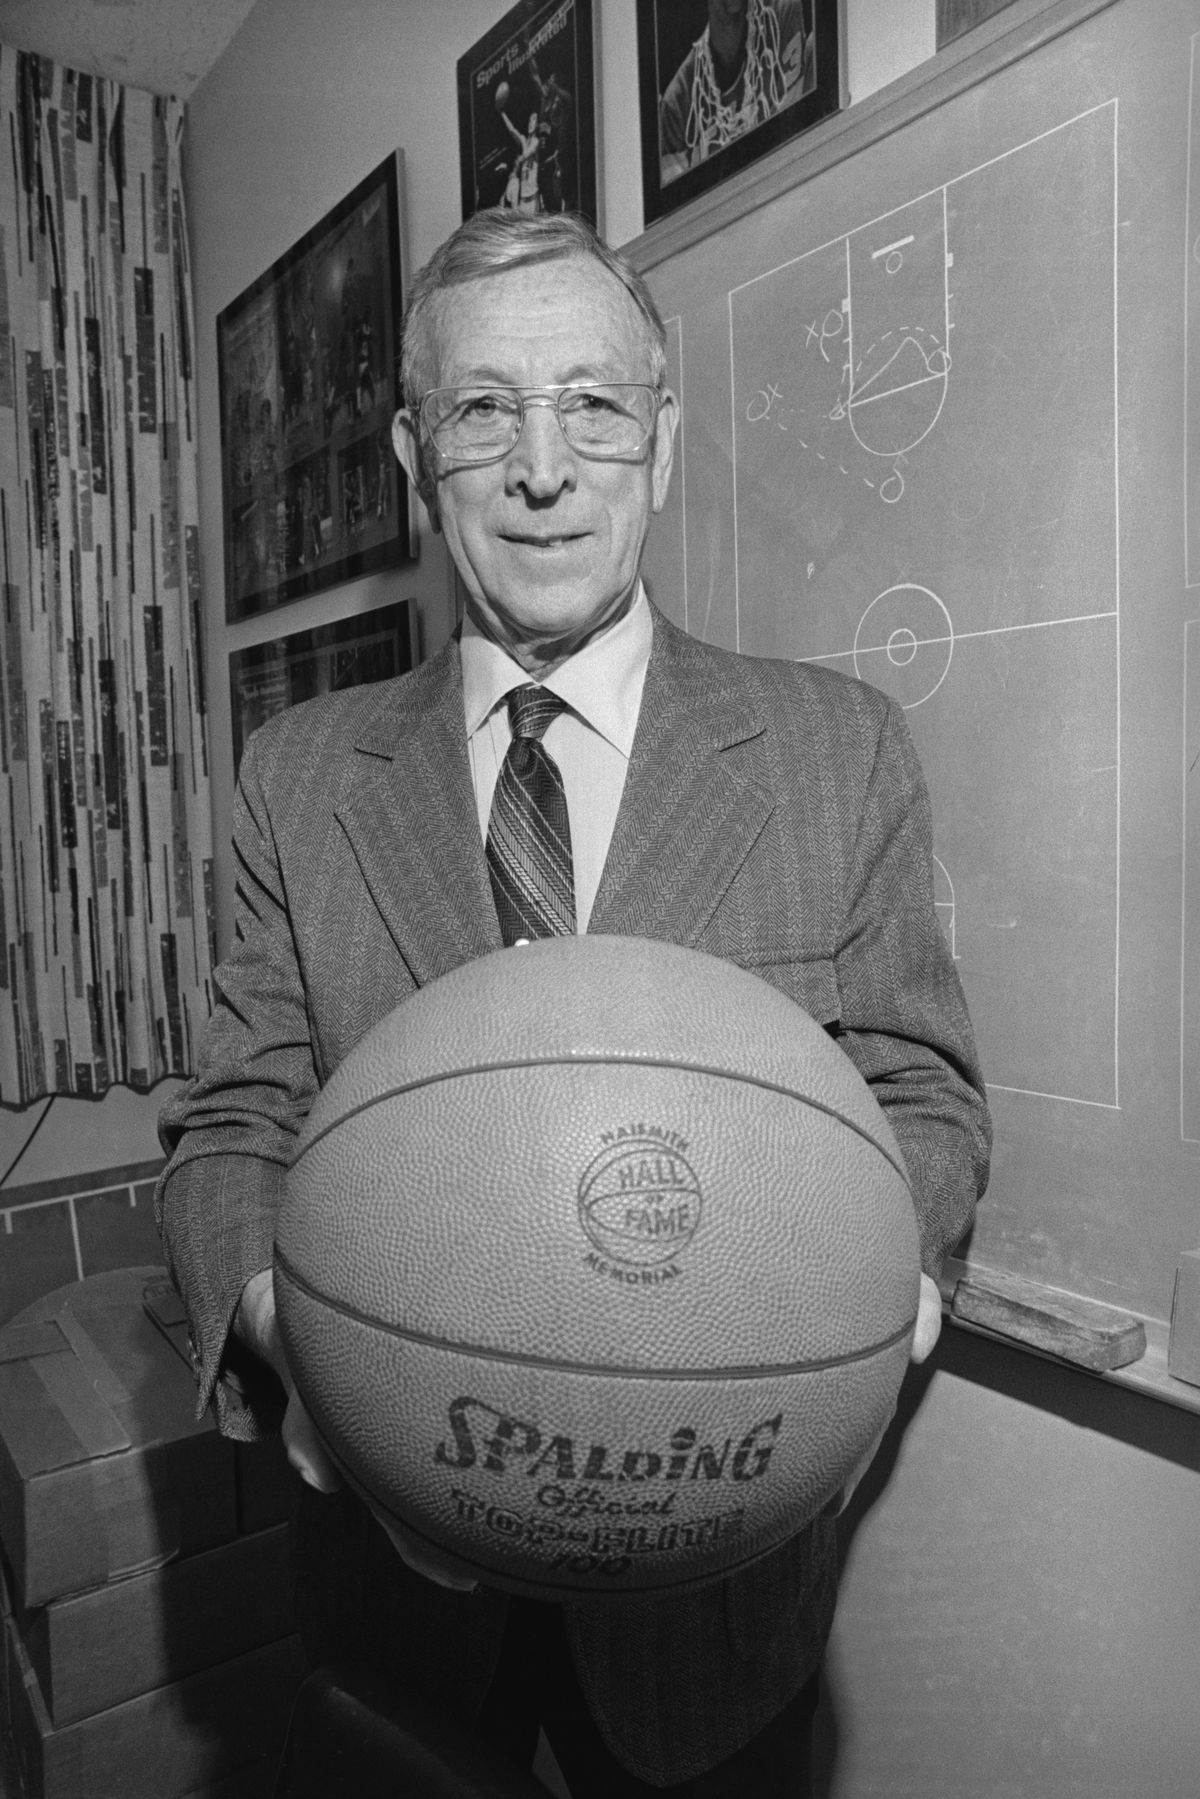 John Wooden Holding a Basketball